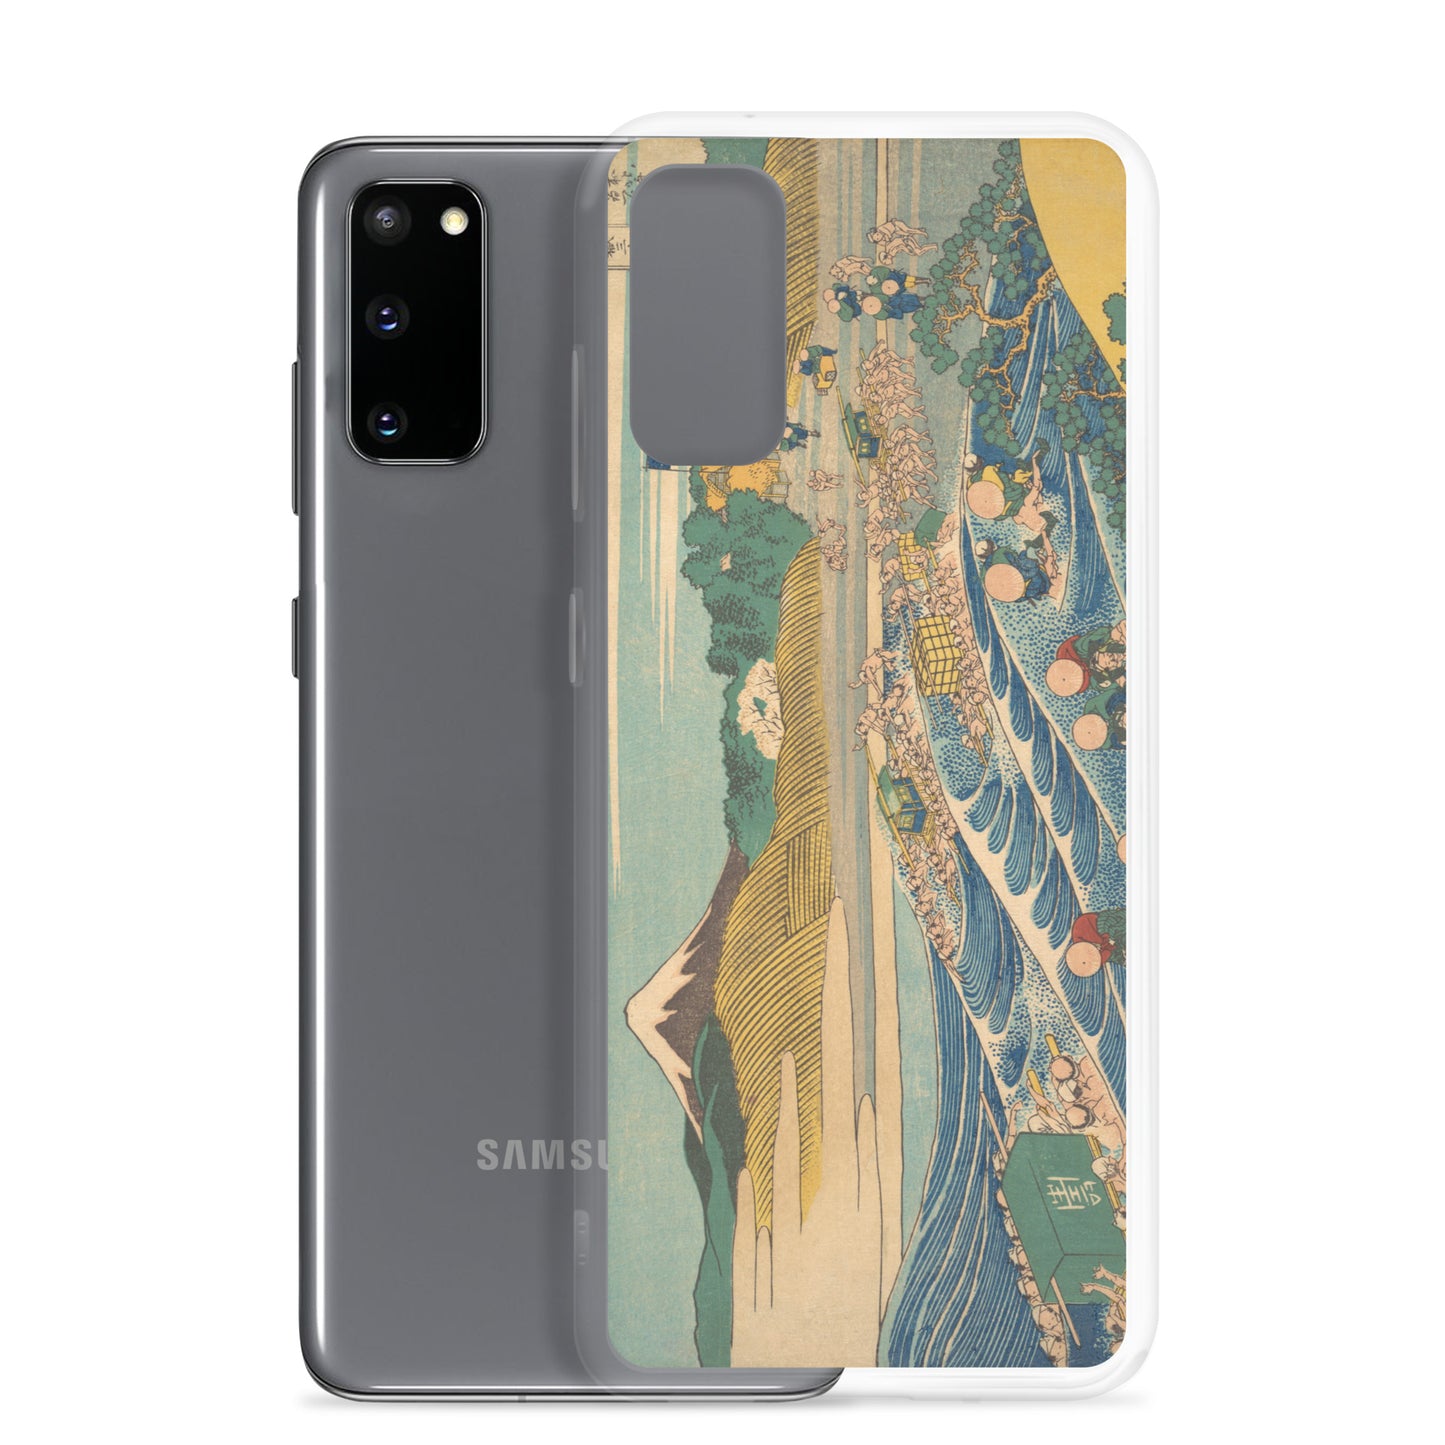 Samsung Galaxy Case Tokaido Kanaya no Fuji A [Fugaku Sanjurokkei]